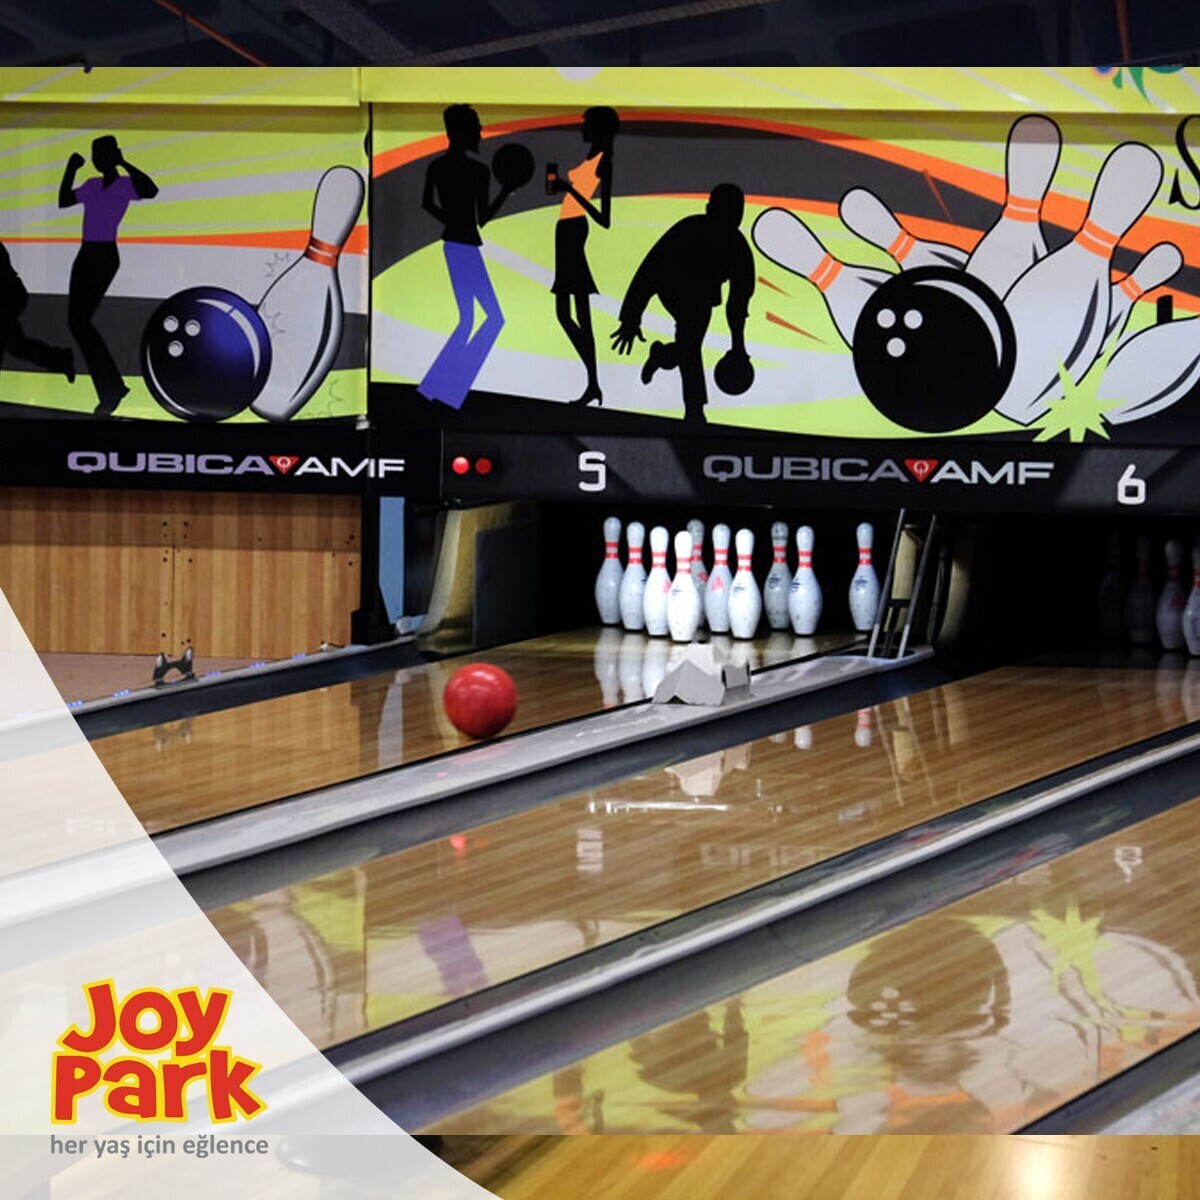 JoyPark Kanatlı AVM Bowling Oyun Biletleri